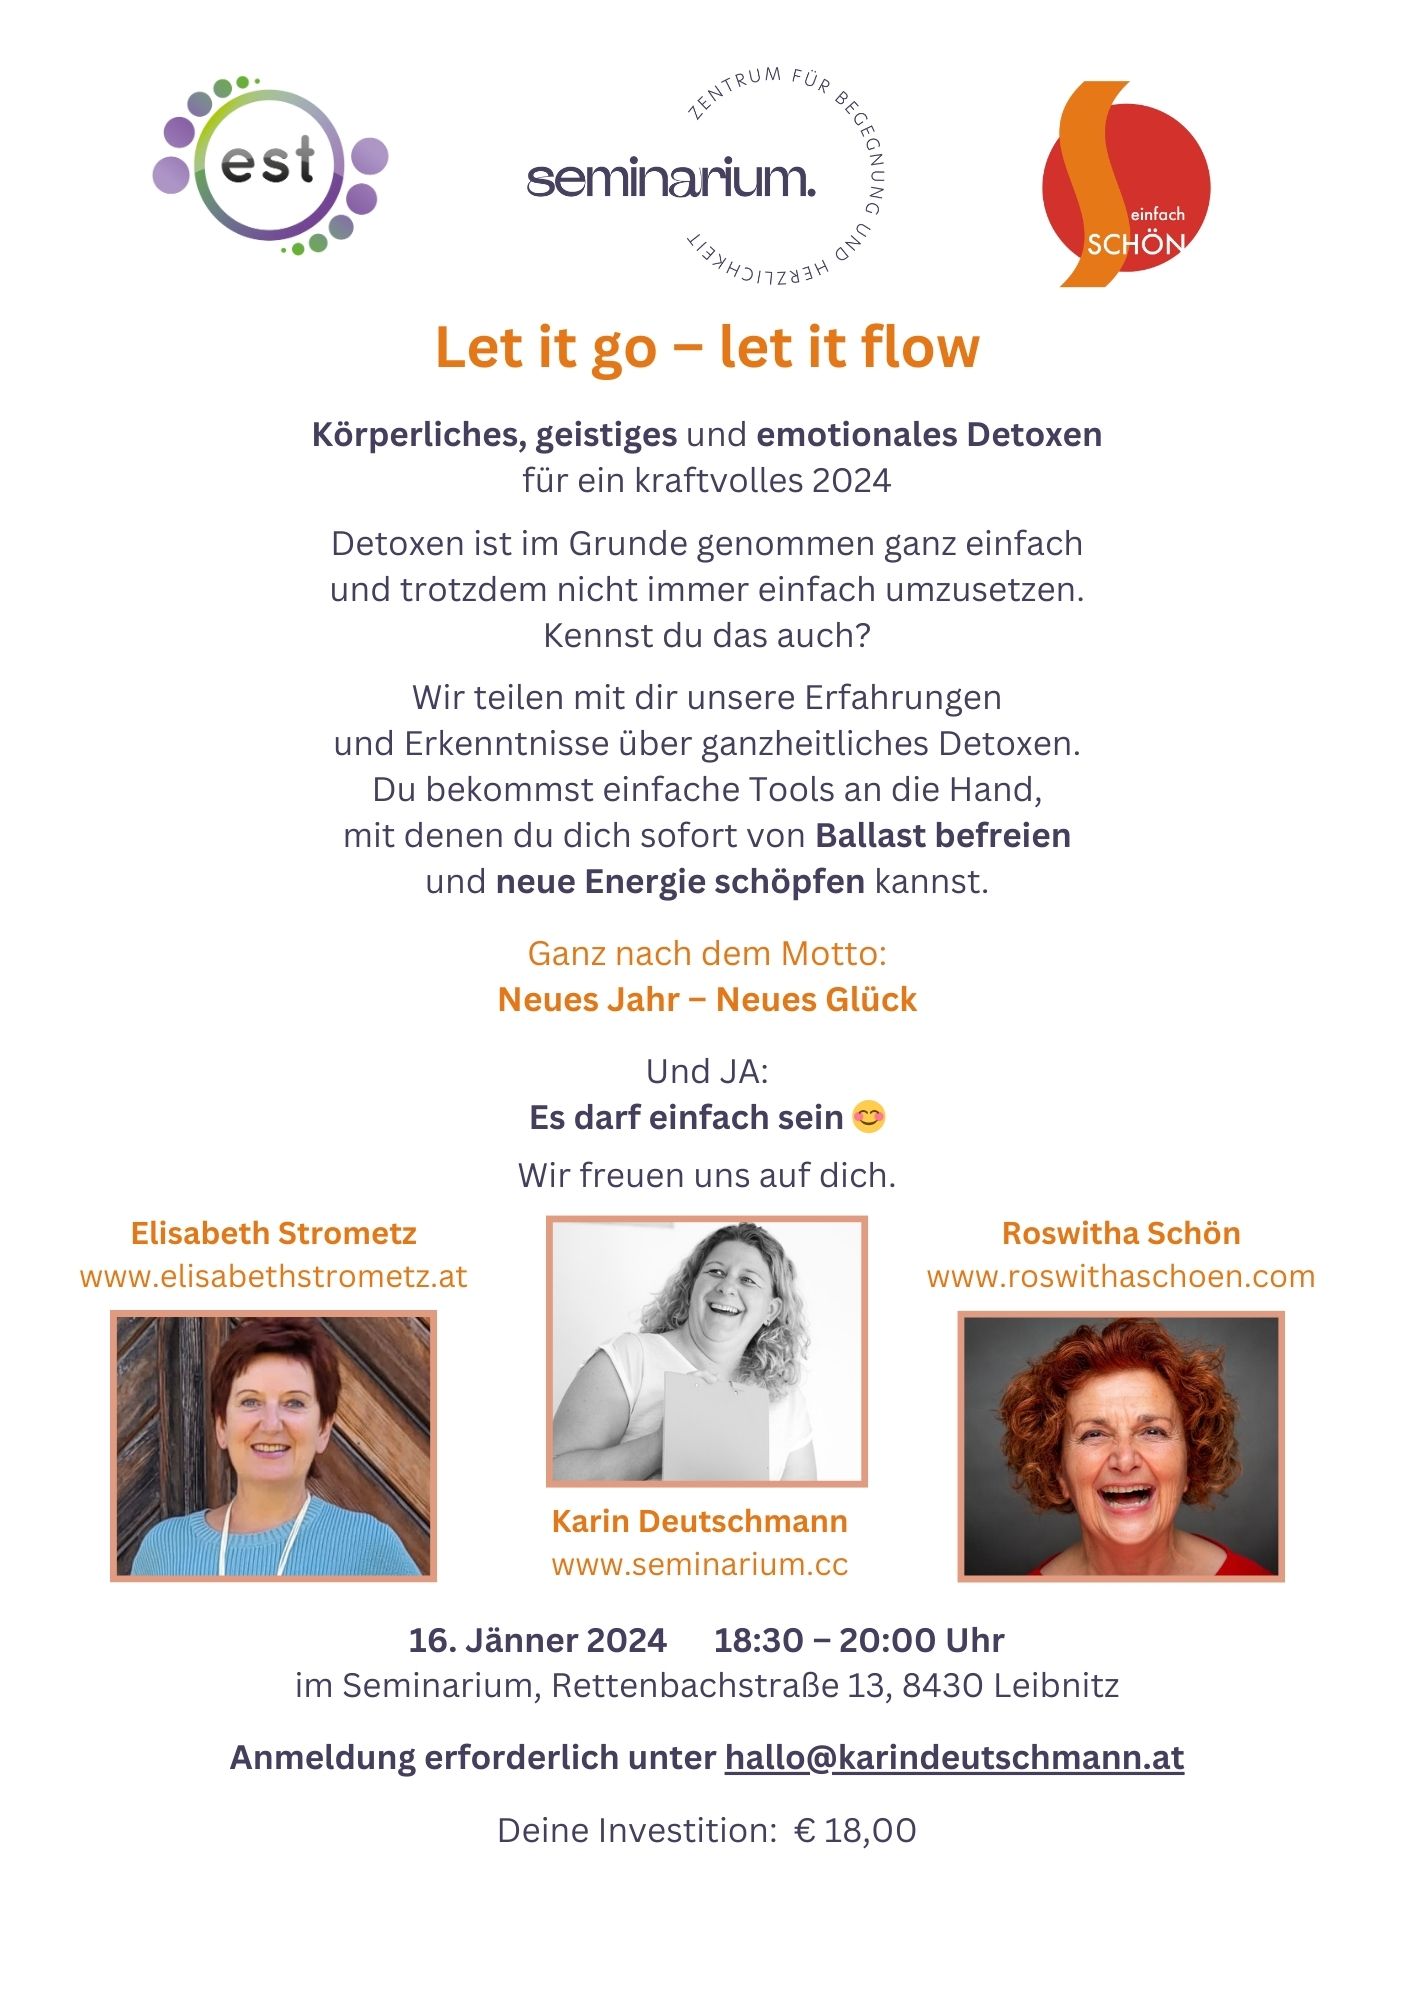 Let it go - let it flow, Impulsvortrag für ganzheitliches Detoxen, Seminarium, Leibnitz